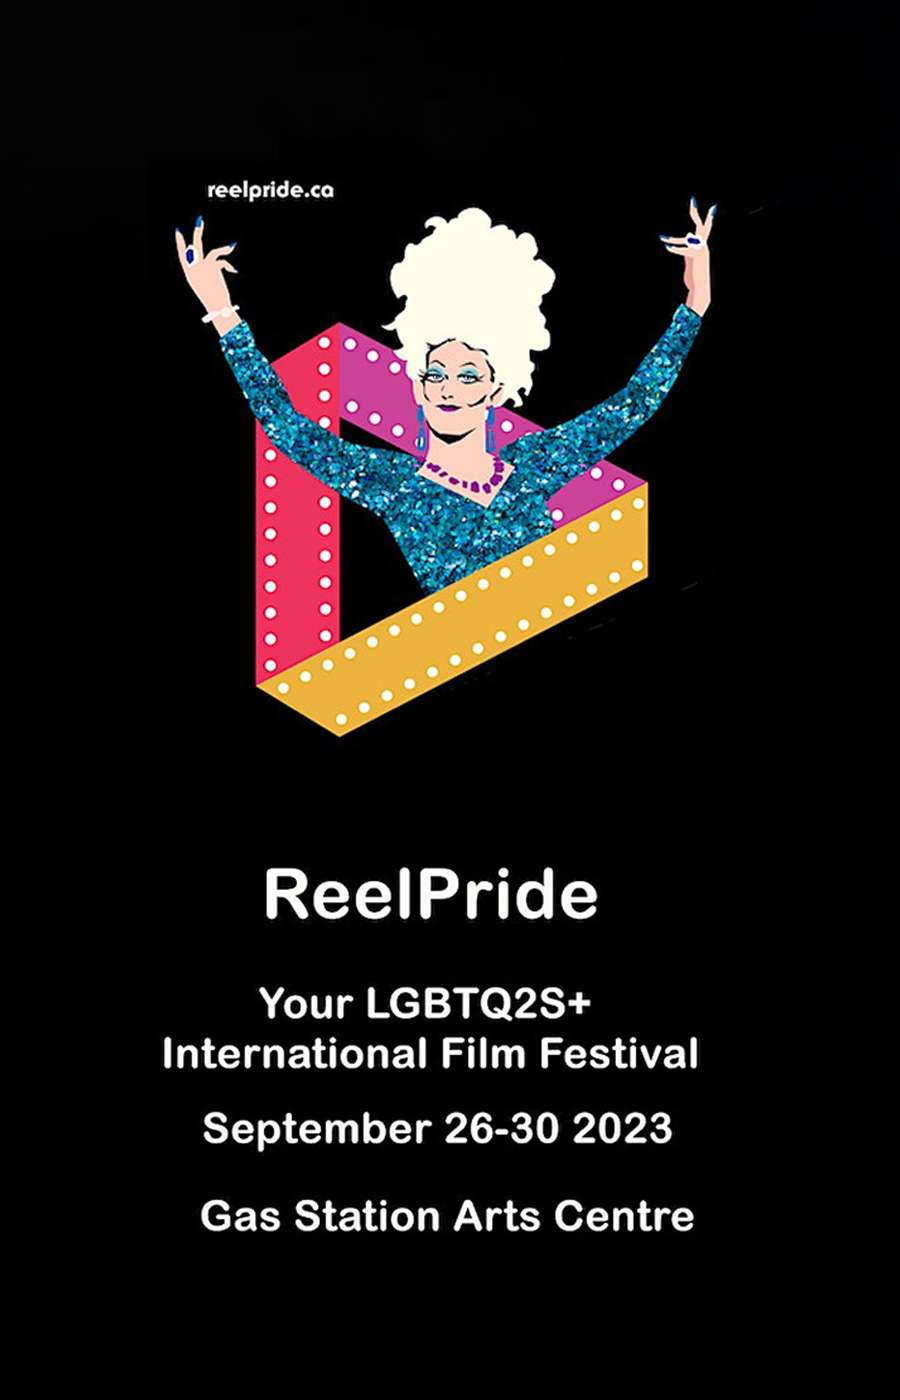 Reel Pride International Film Festival (SEPT 26-30)